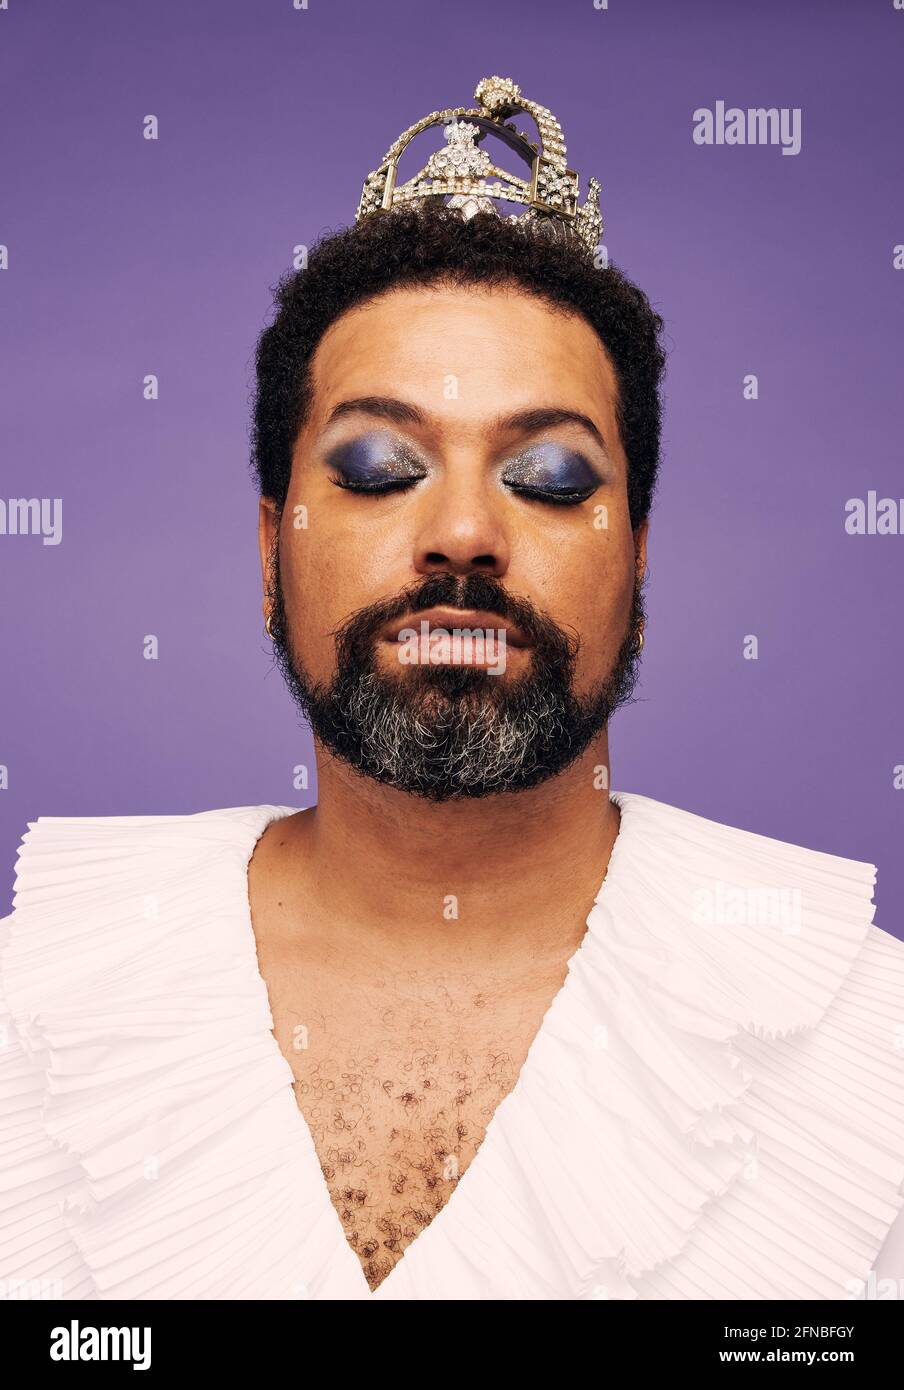 Ritratto di un uomo barba con trucco e corona. Incredibile drag queen con gli occhi chiusi. Foto Stock